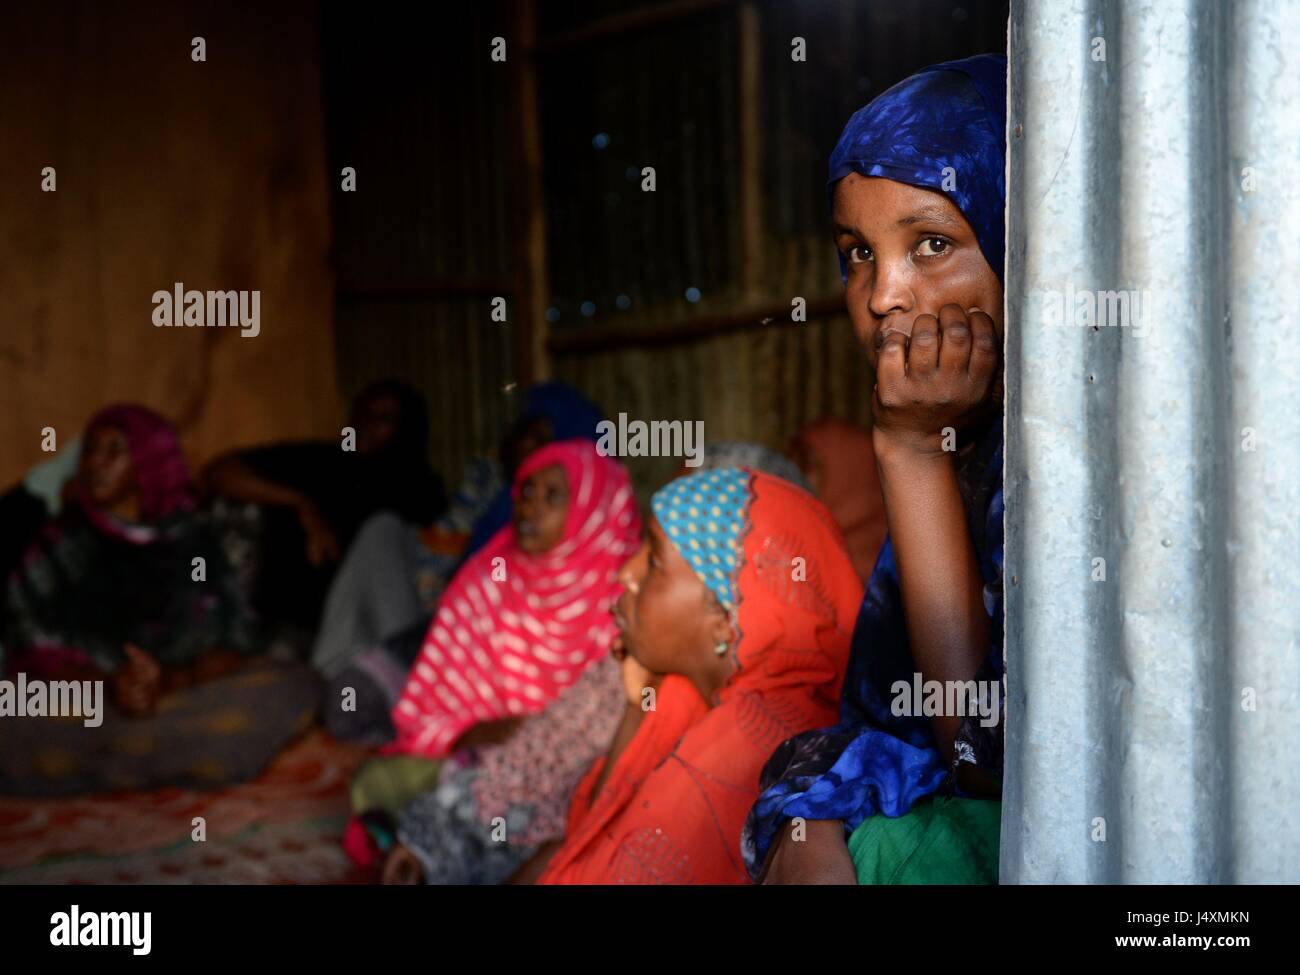 Les femmes sont représentées dans une personne déplacée à l'intérieur (PDI) camp à Hargeisa, Somaliland où les familles ont dû quitter leurs foyers dans les villages à la ville afin de trouver de la nourriture et de l'eau après la récente sécheresse. Banque D'Images